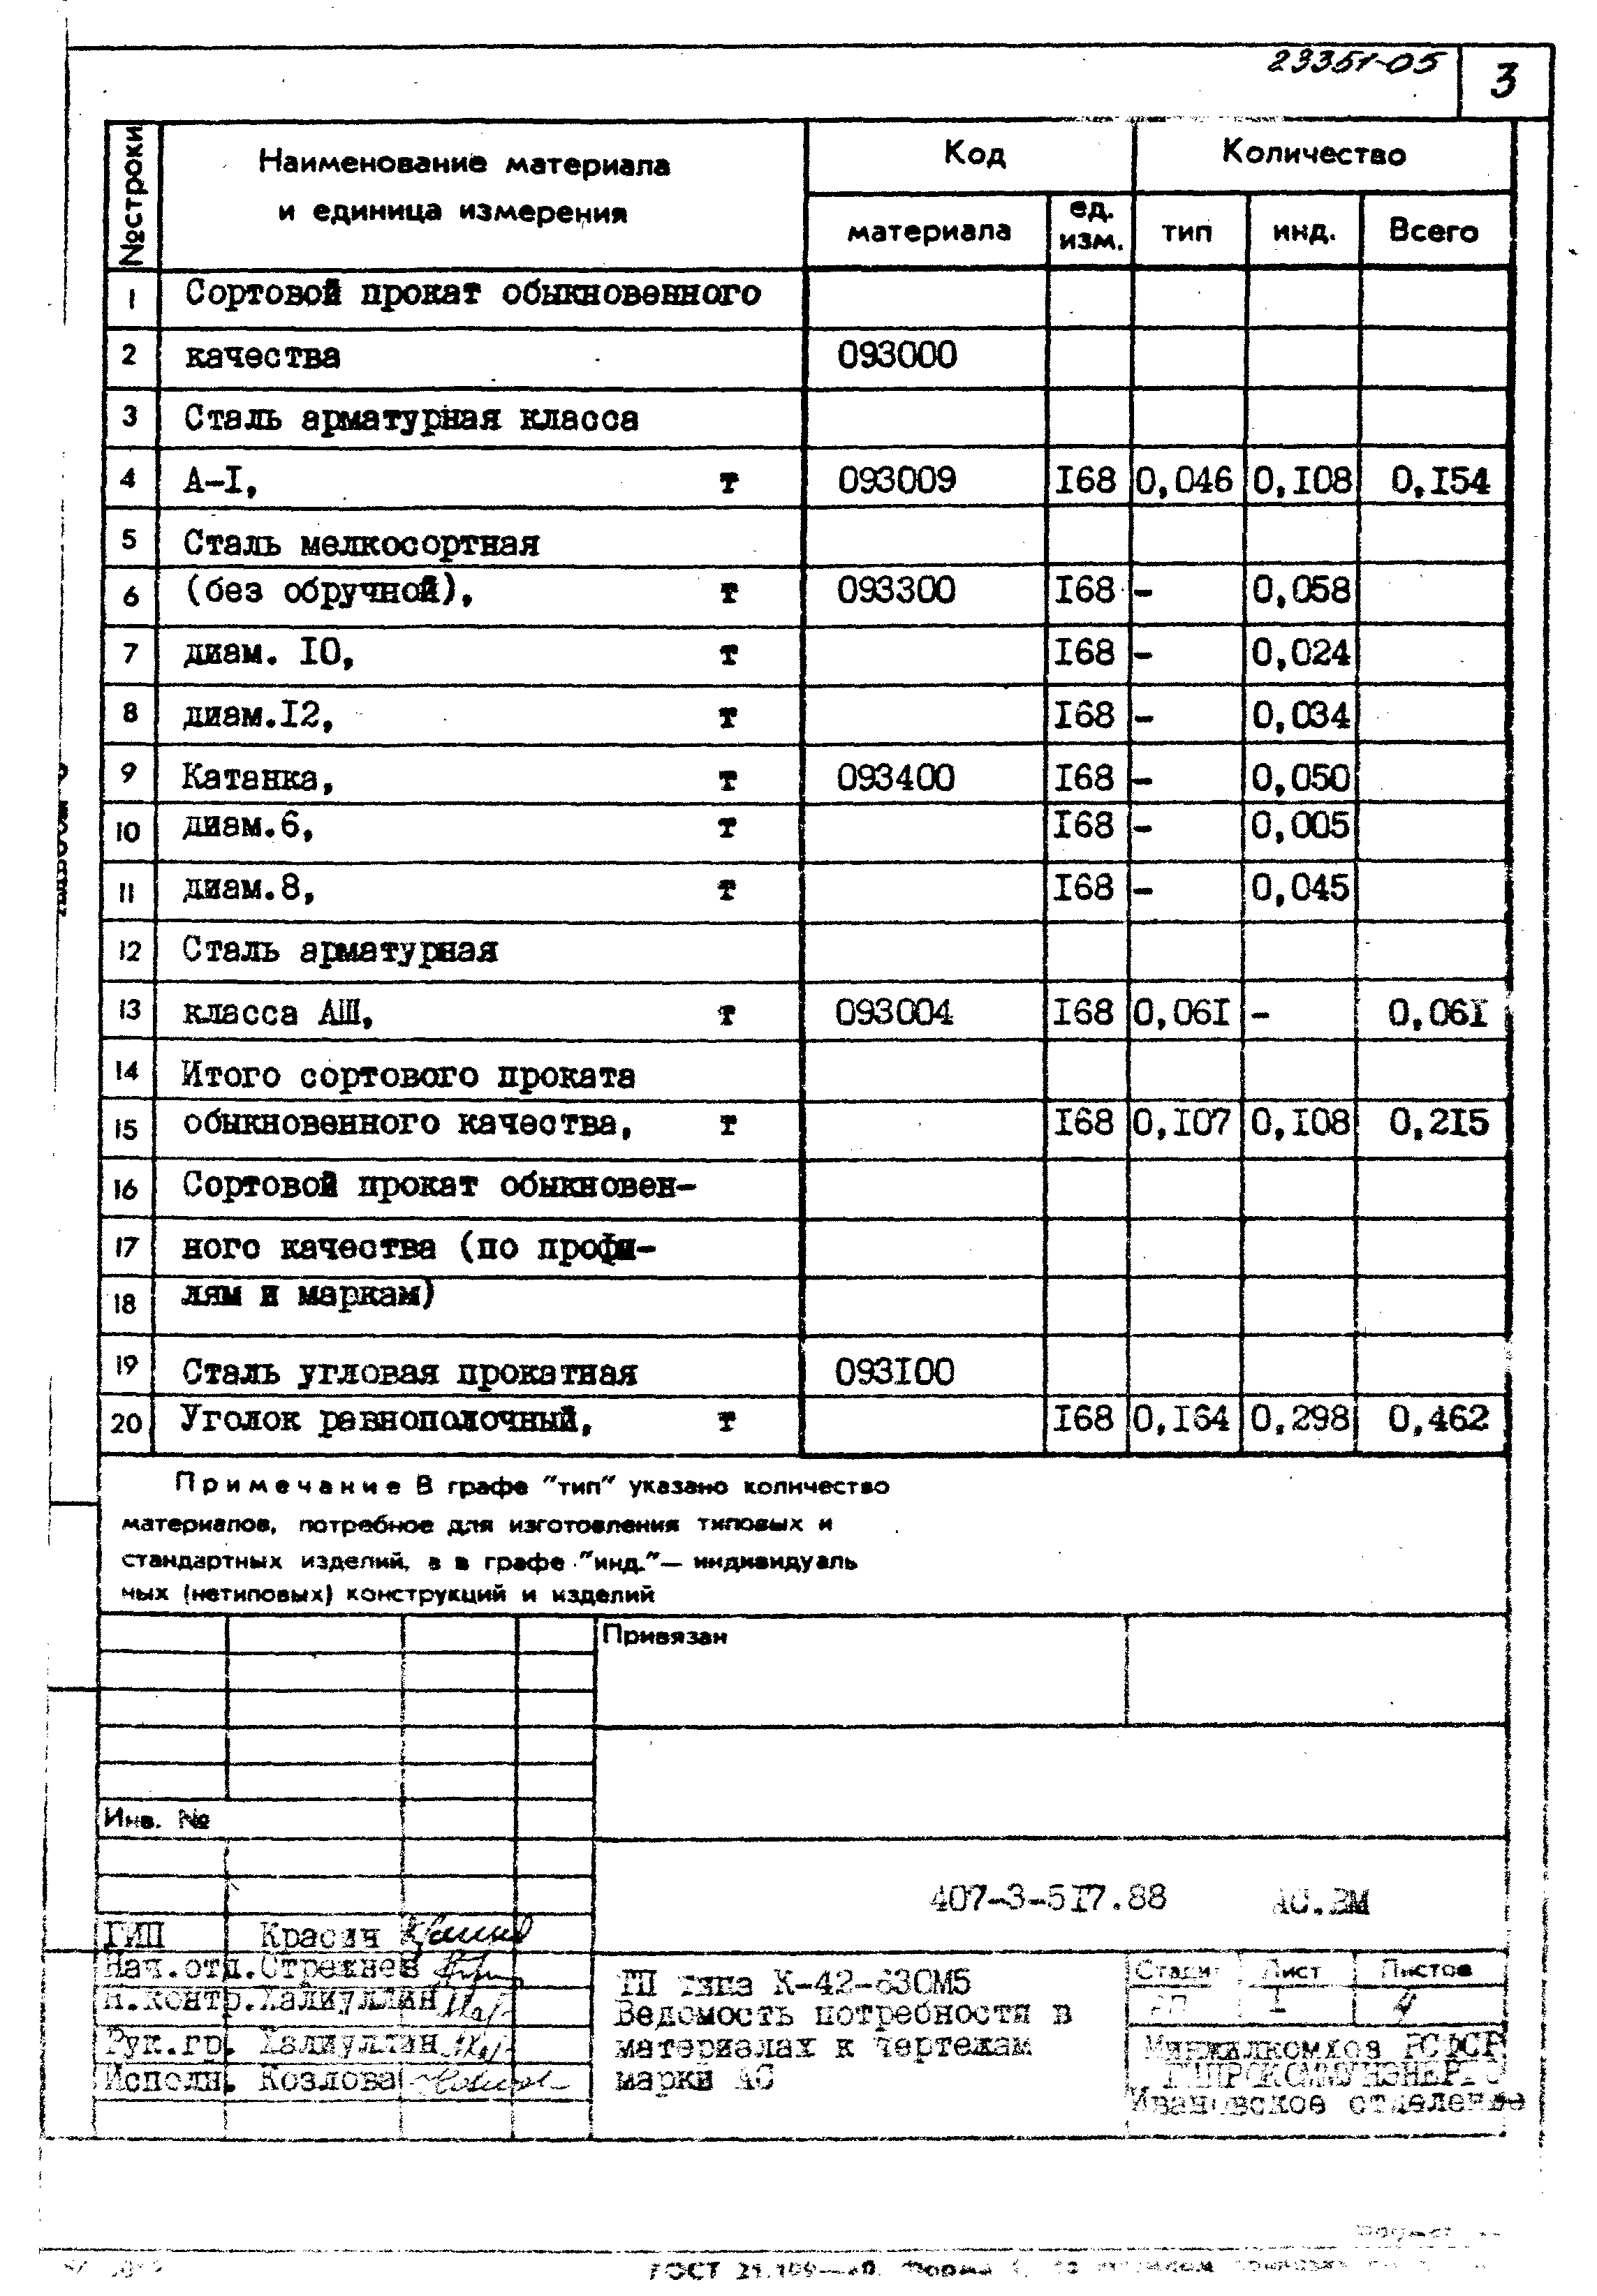 Типовой проект 407-3-517.88